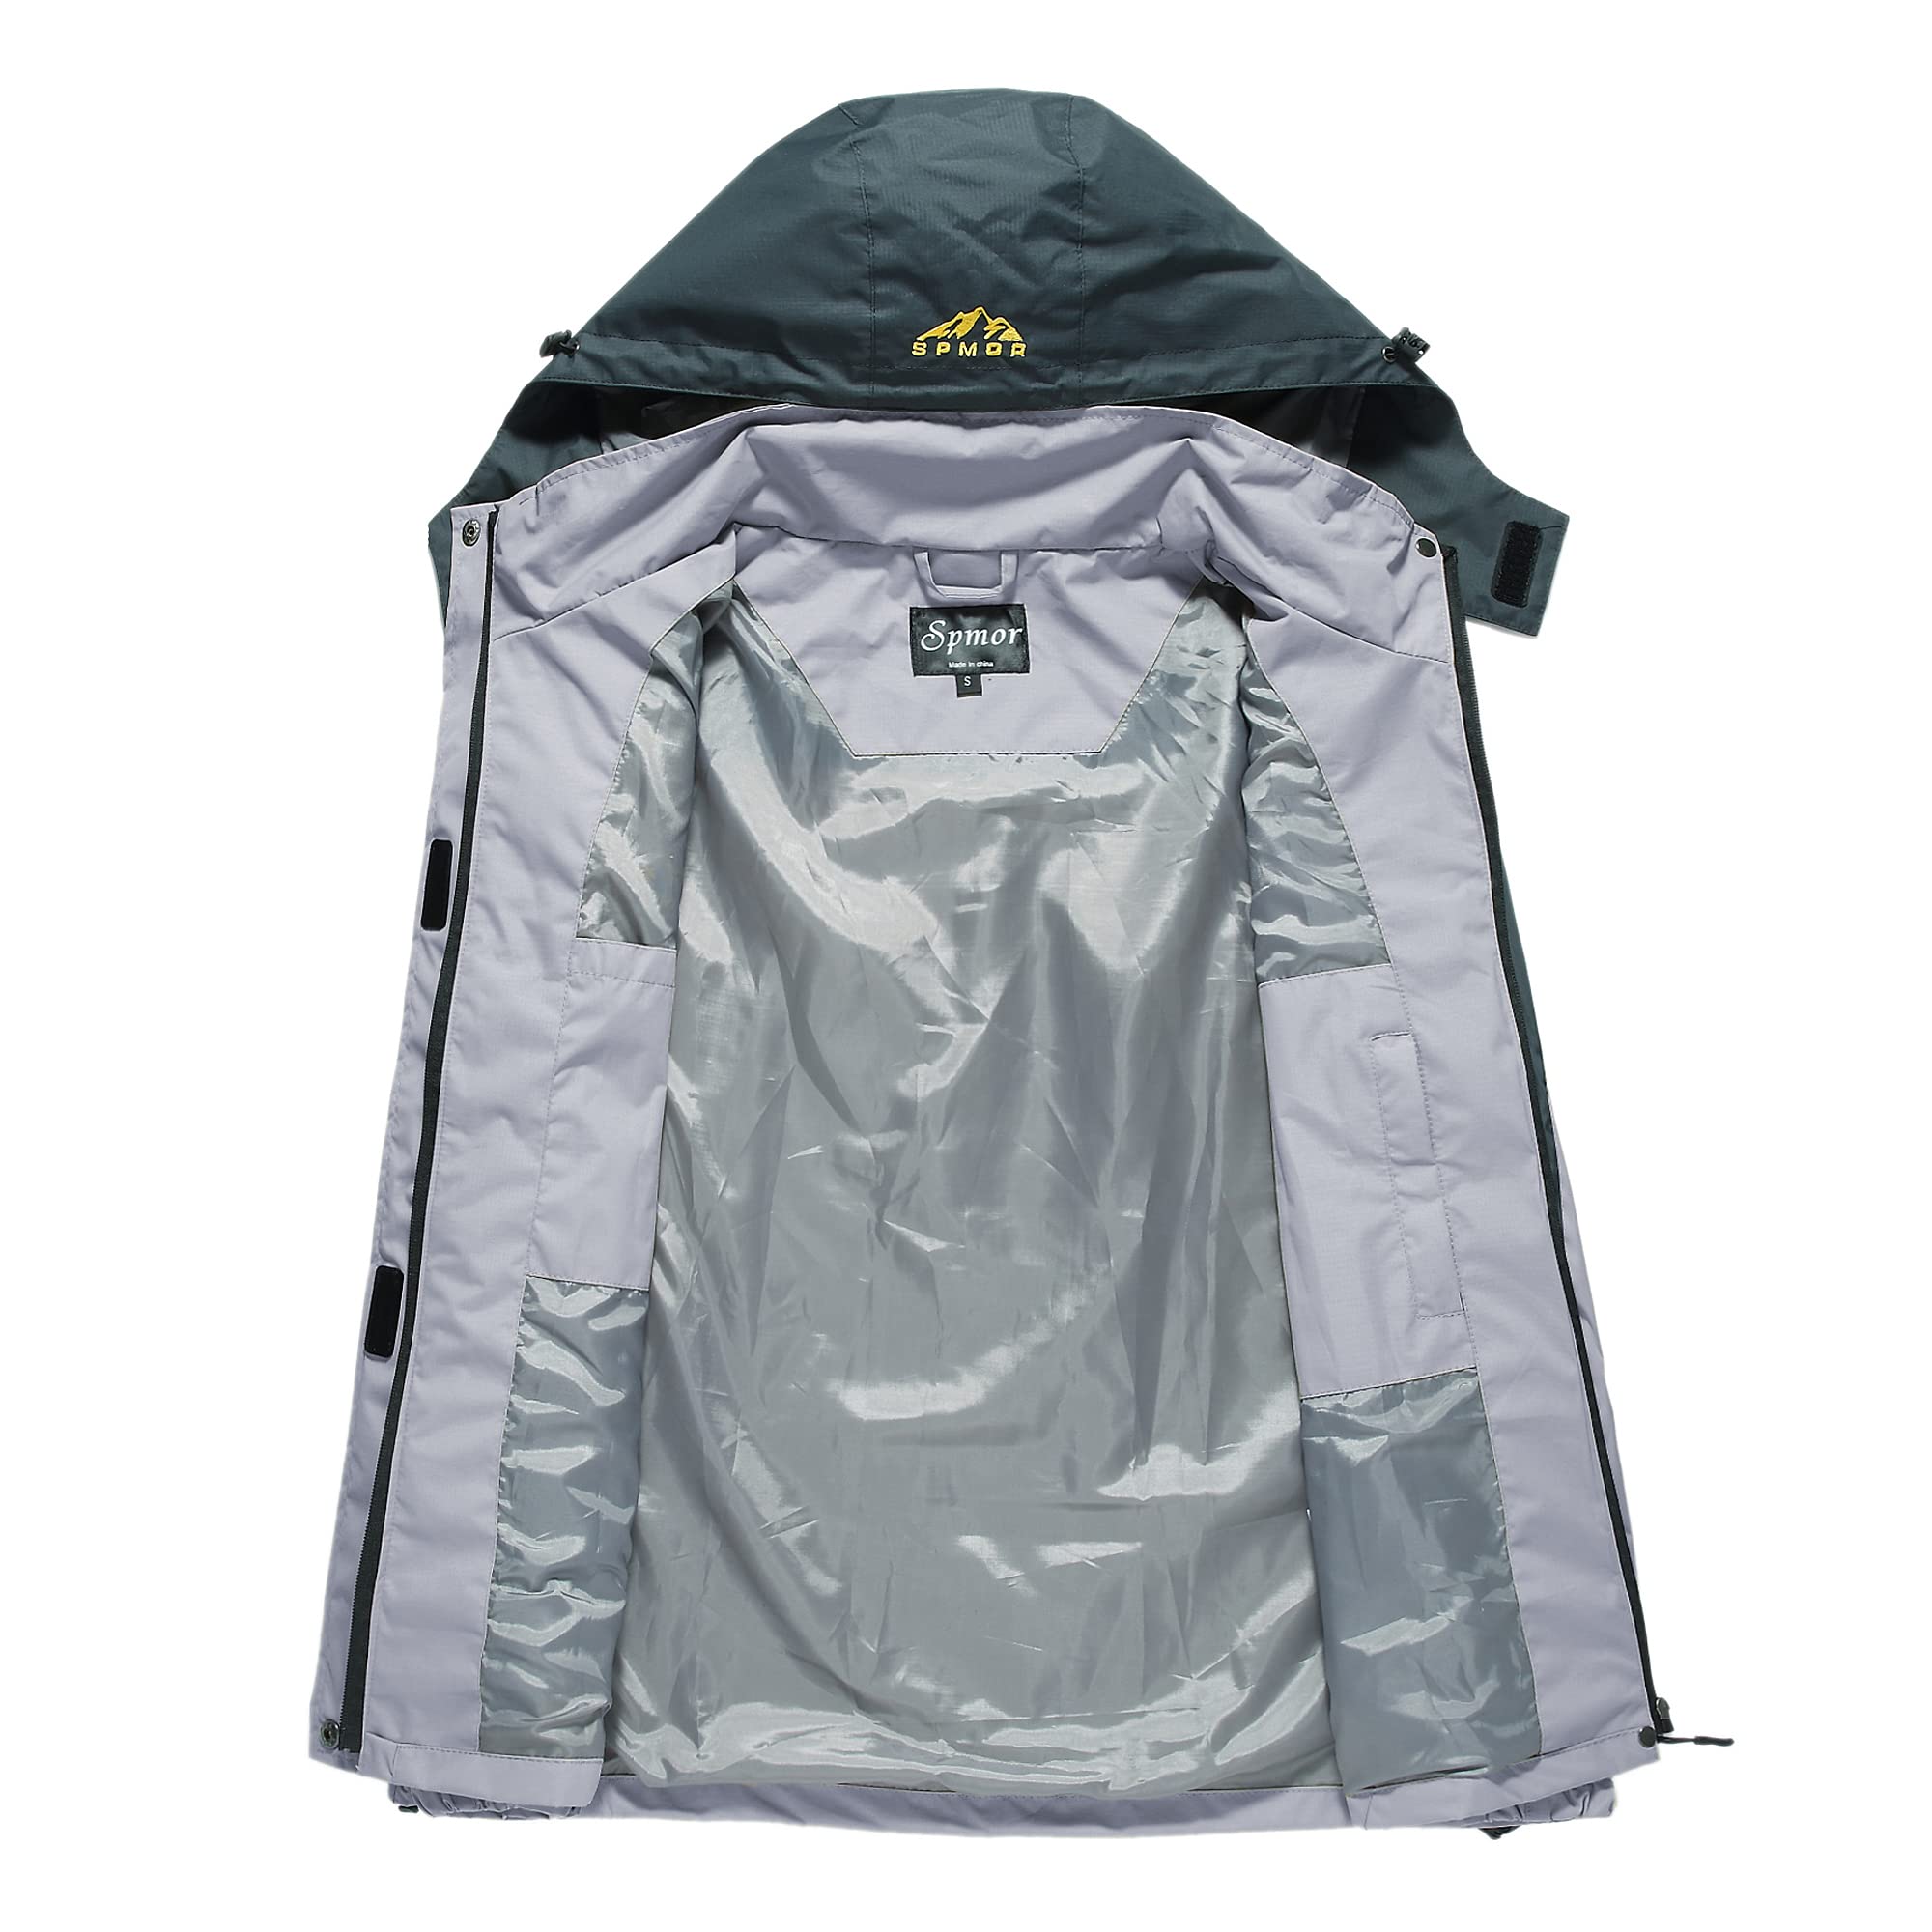 Spmor Women's Waterproof Rain Jacket Cycling Windproof Breathable Hooded Windbreaker Grey Small